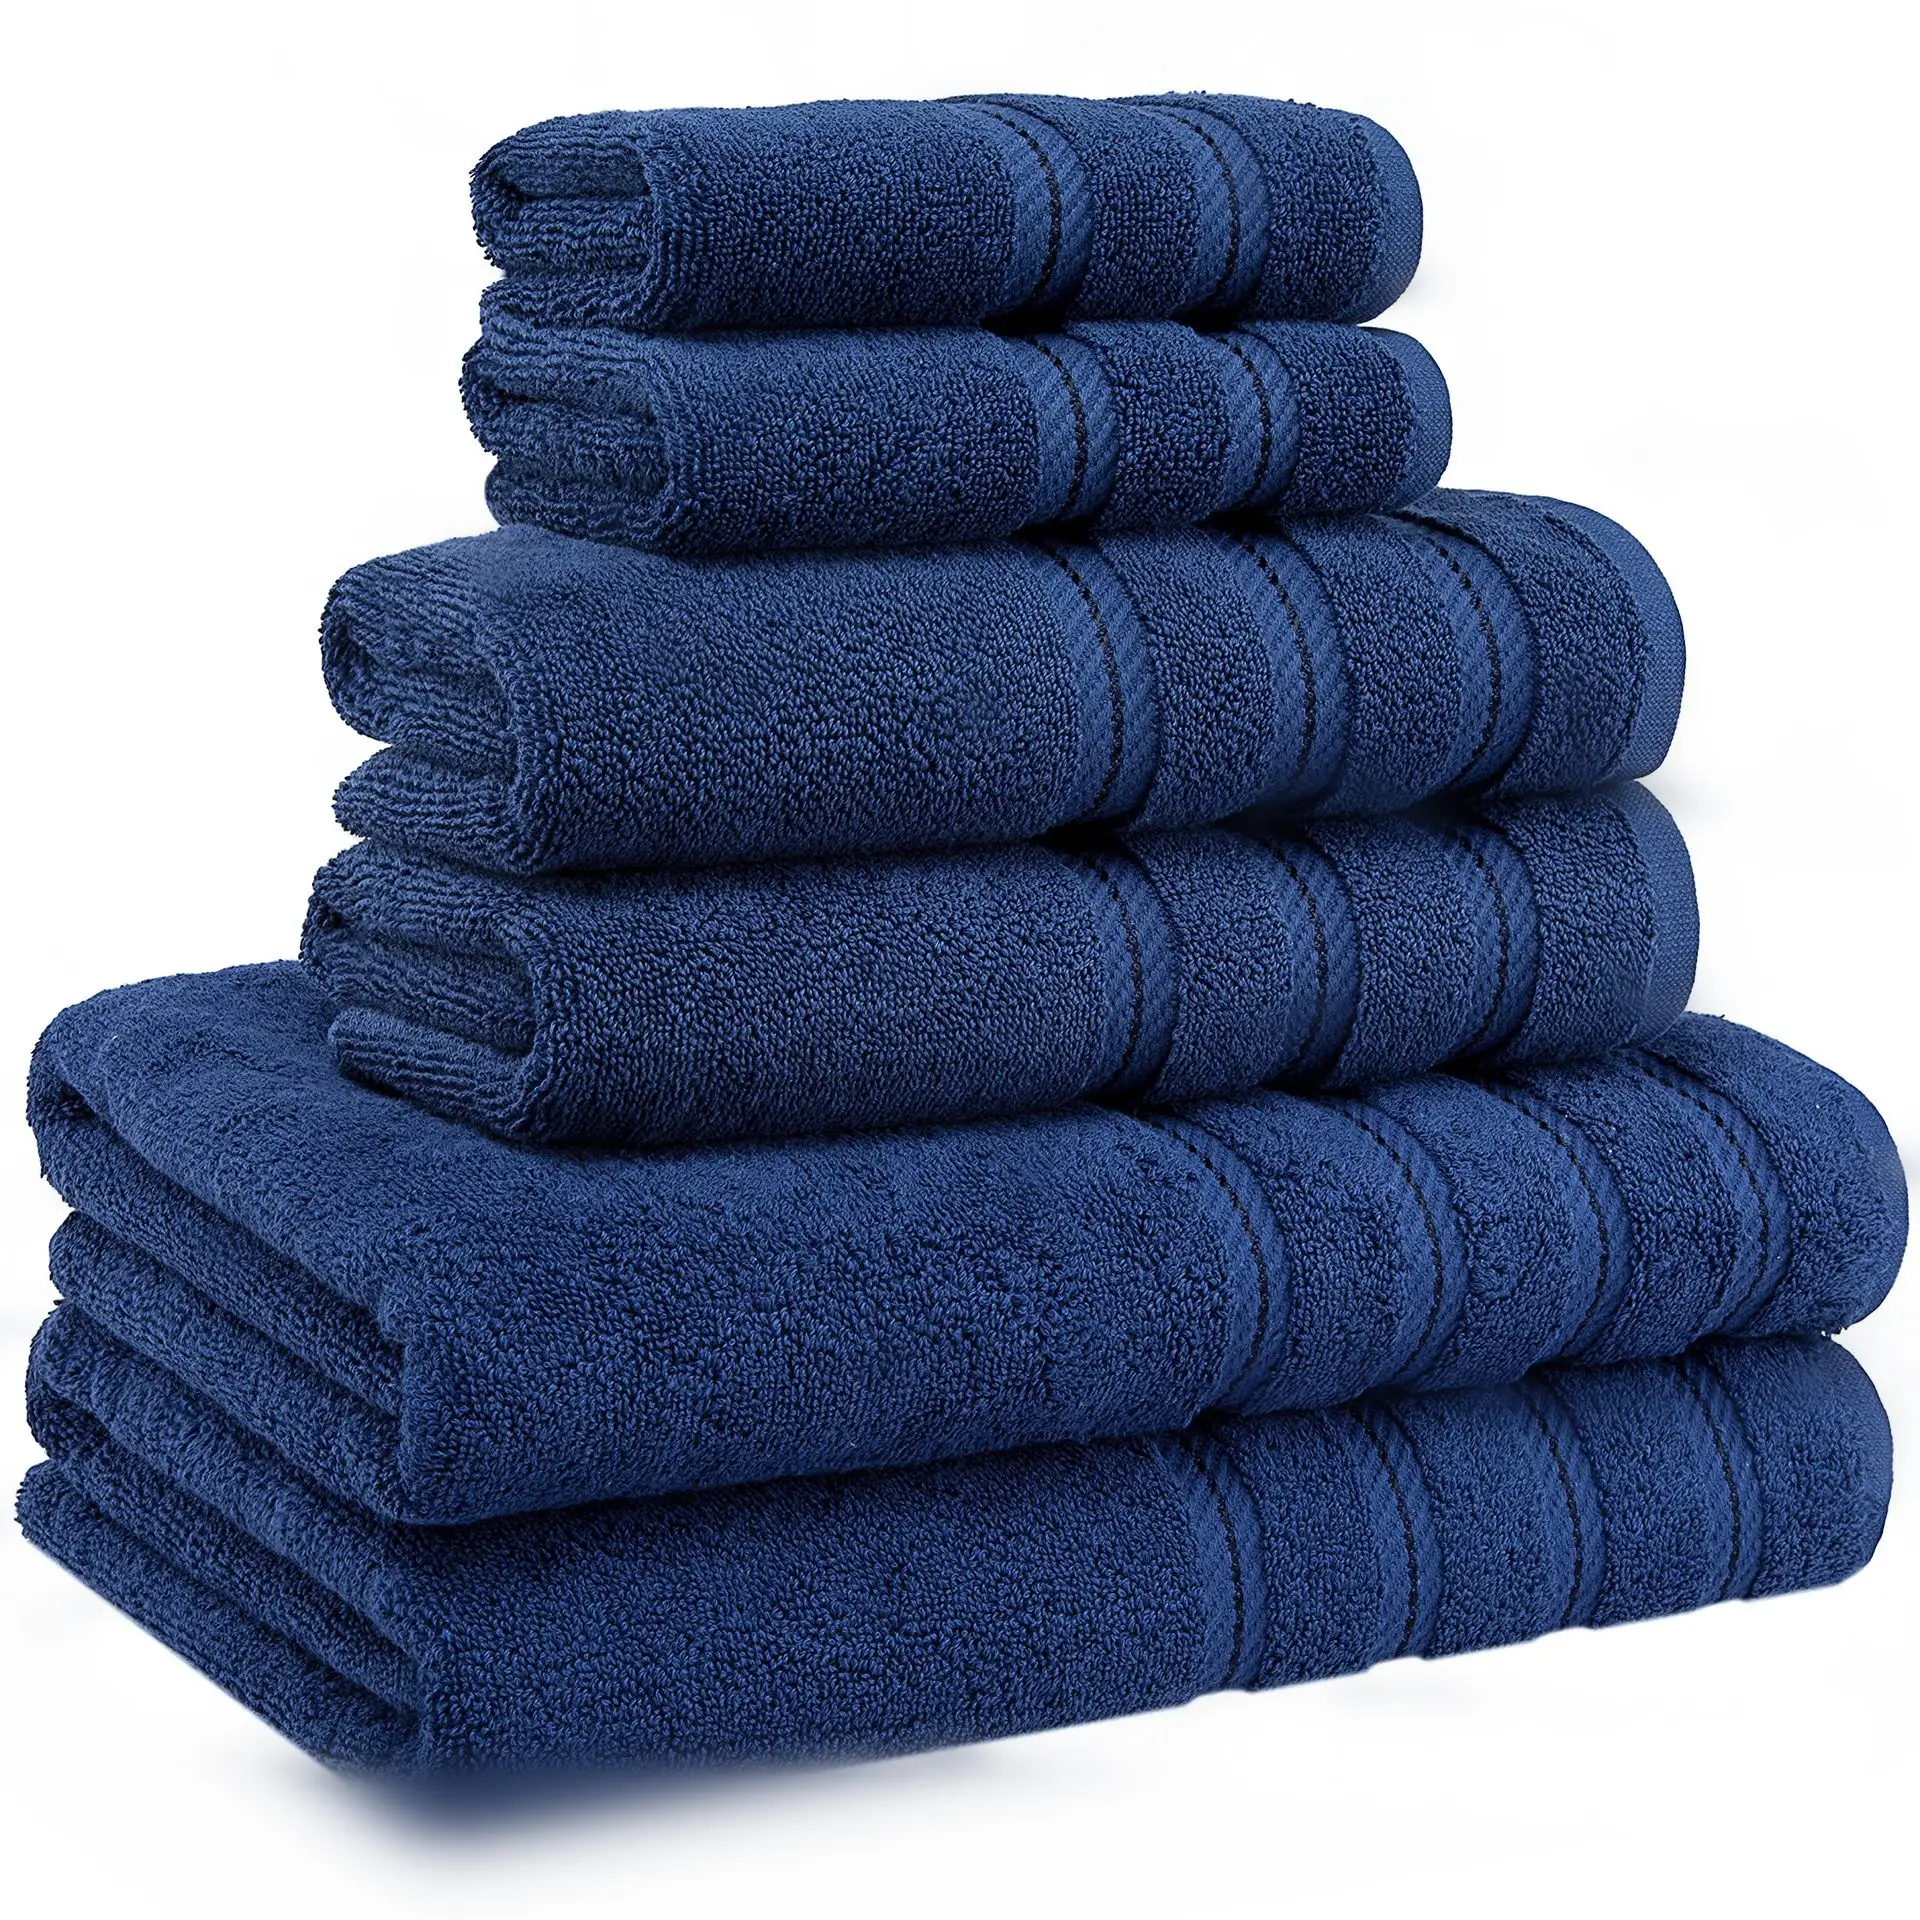 Luxo 5 estrelas Hotel personalizado 100% algodão banho toalha conjunto 100 algodão luxo conjunto